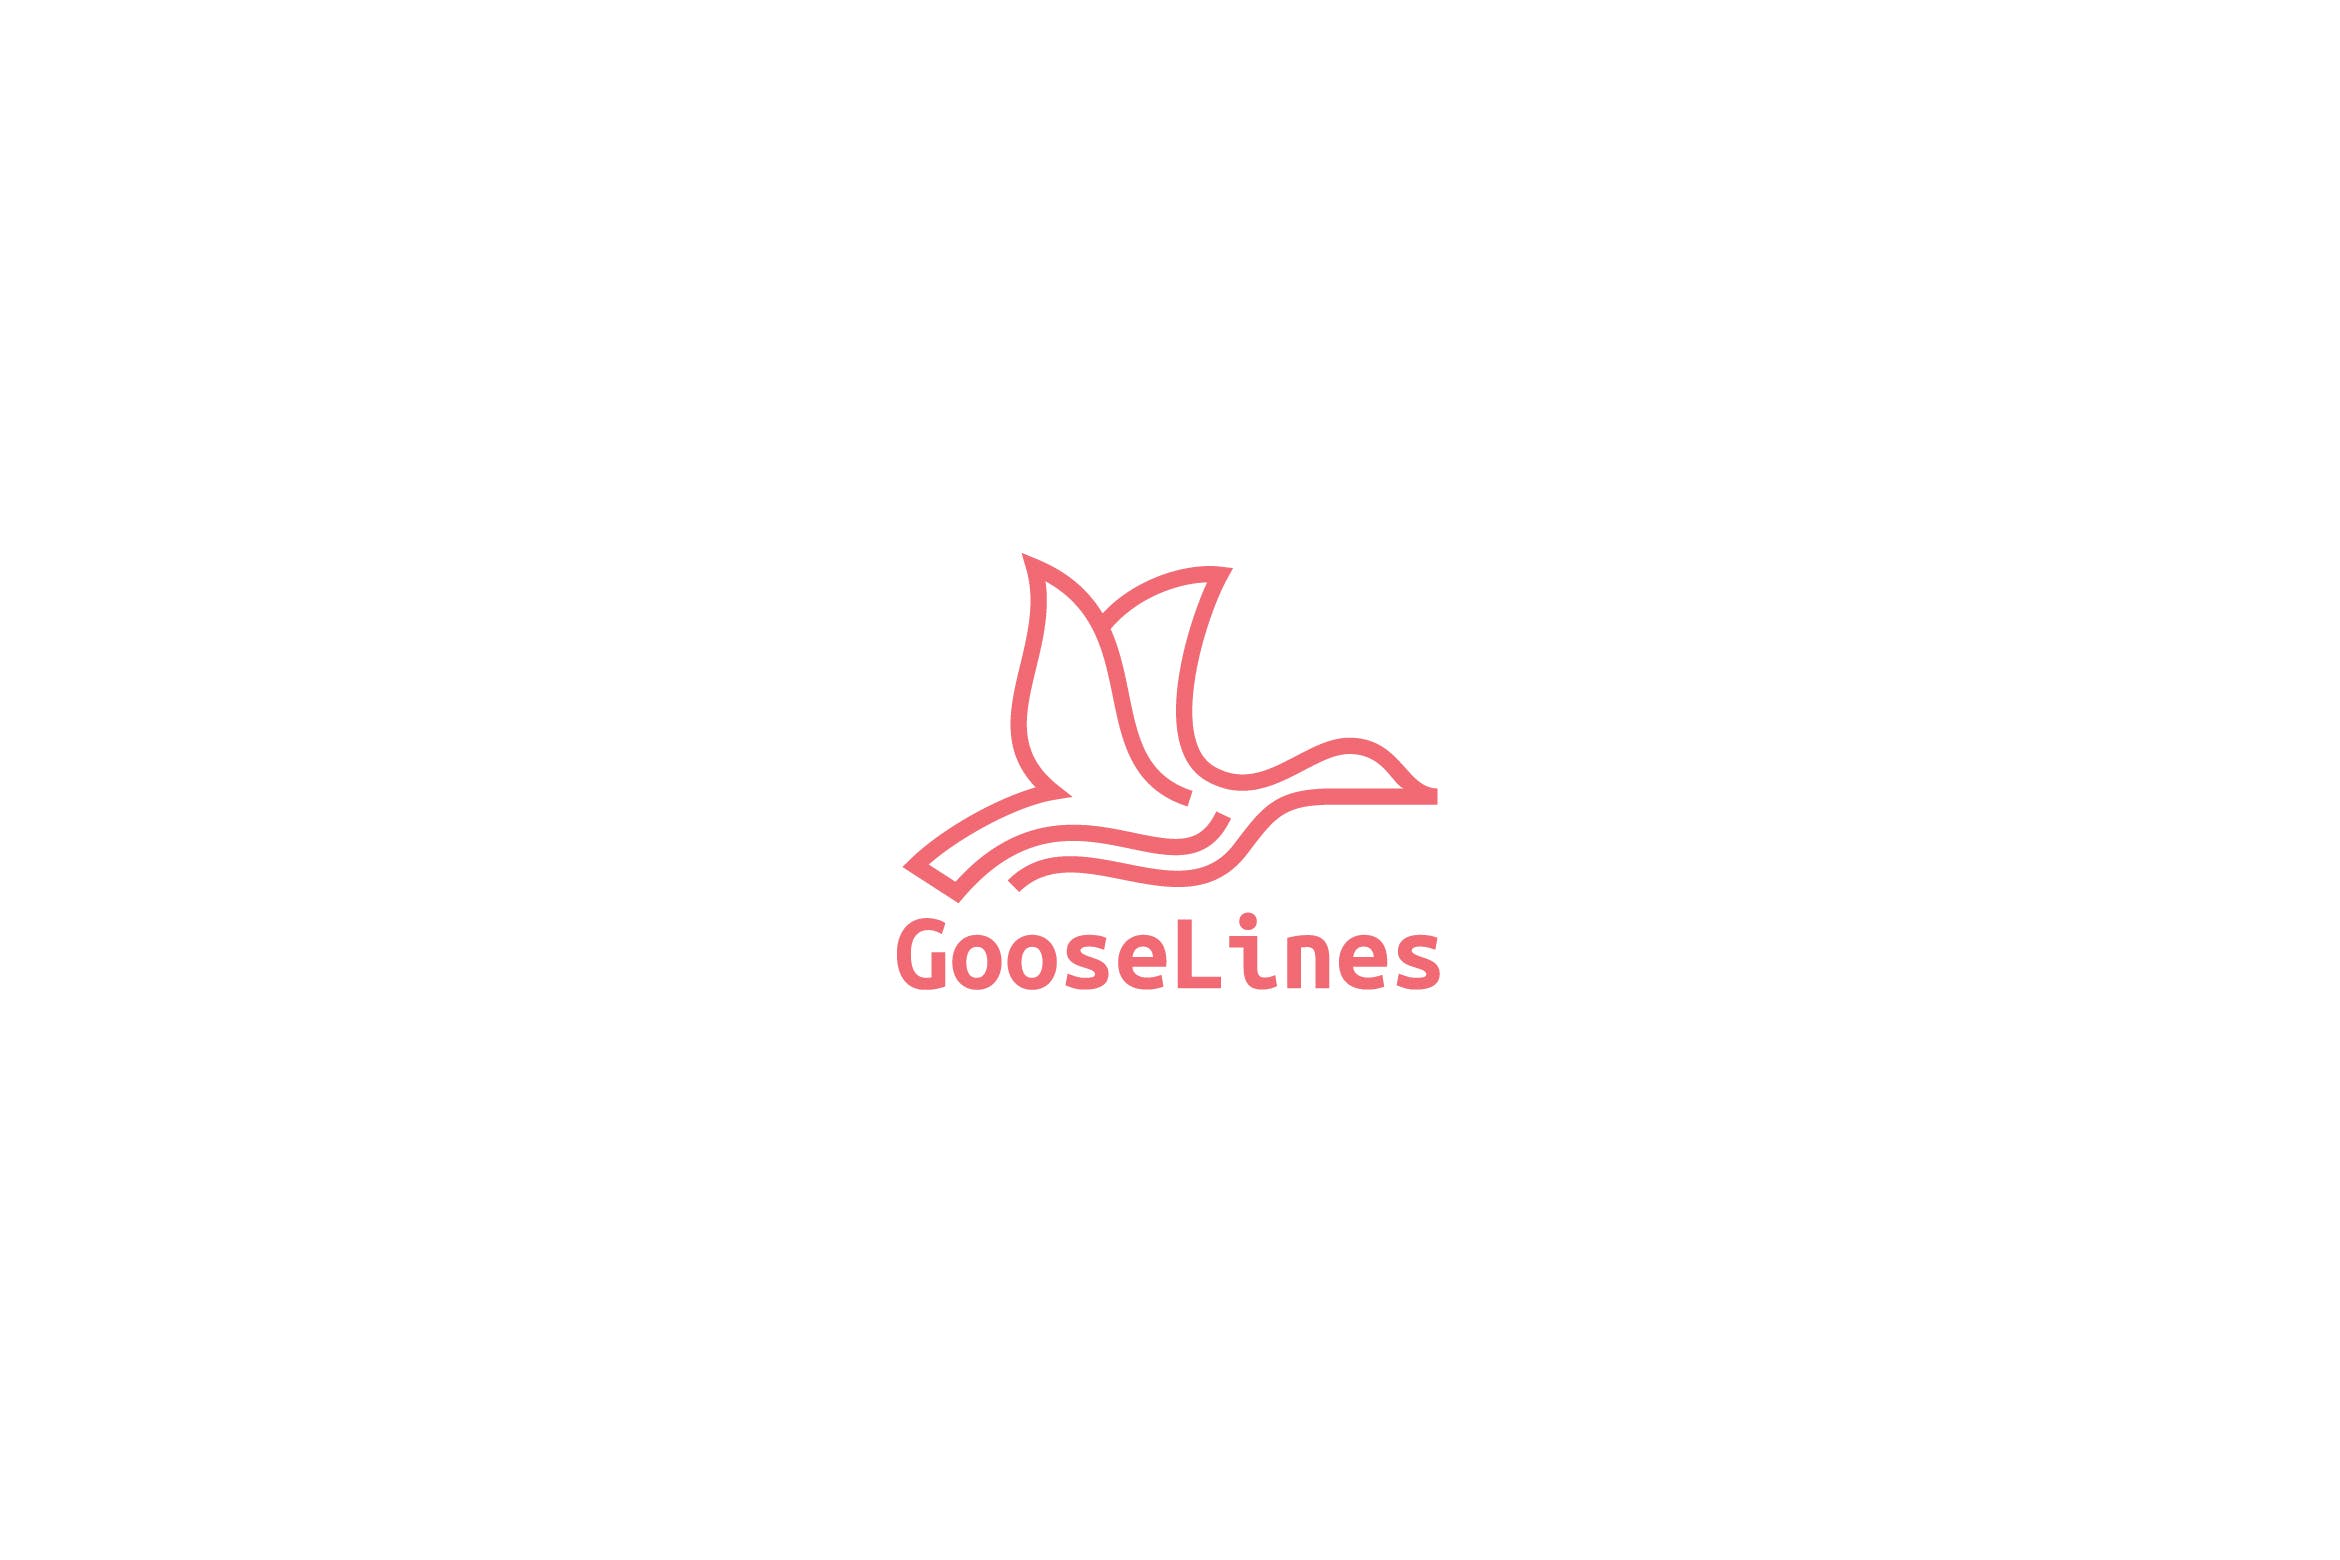 天鹅简笔画线条图形Logo设计素材库精选模板 Goose Lines Logo插图